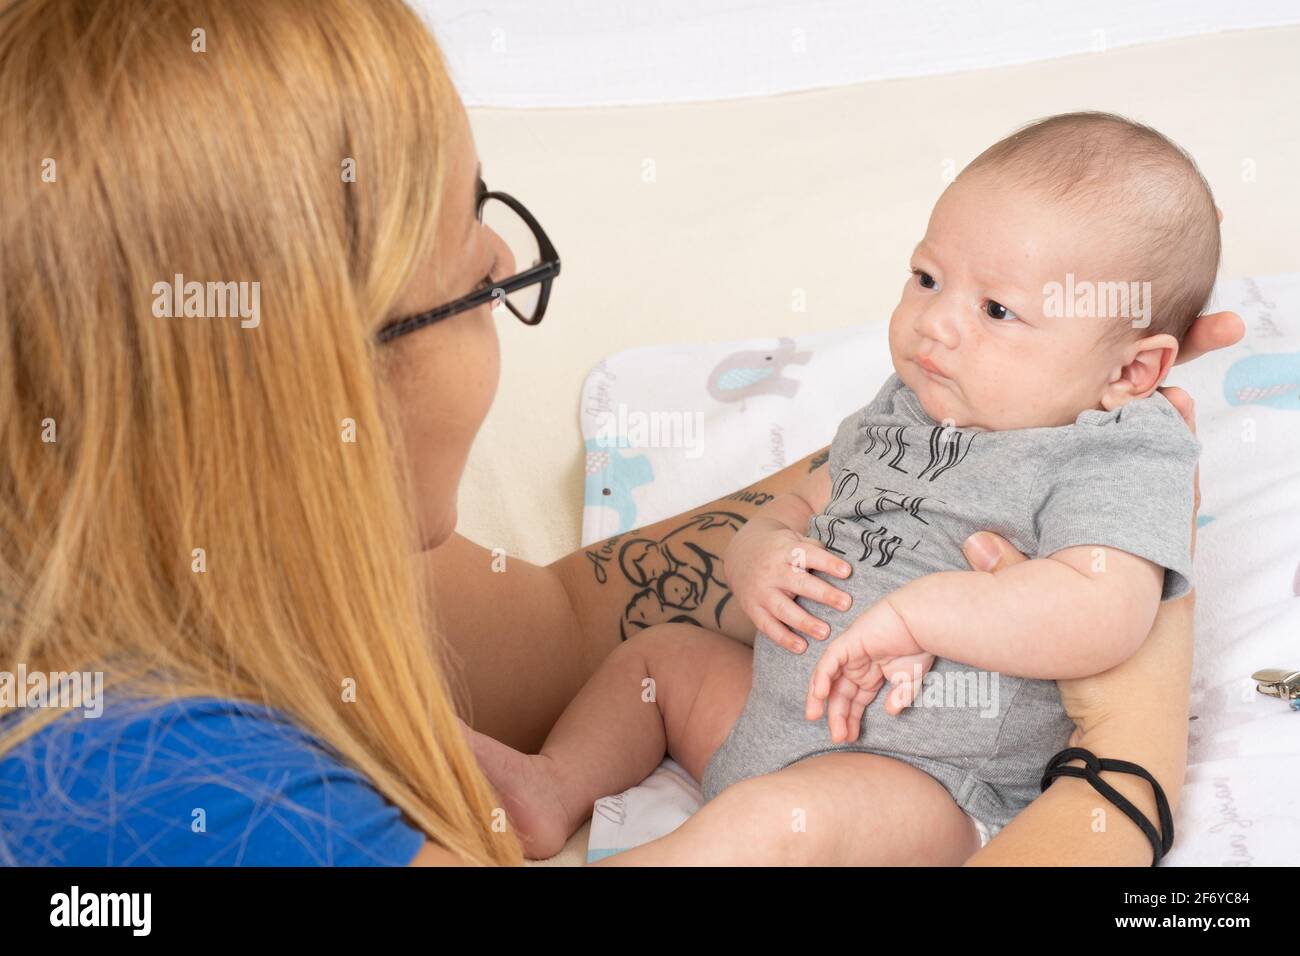 Neugeborener Baby Junge 7 Wochen alt Absicht, die Mutter zu hören Während sie mit ihm spricht Stockfoto